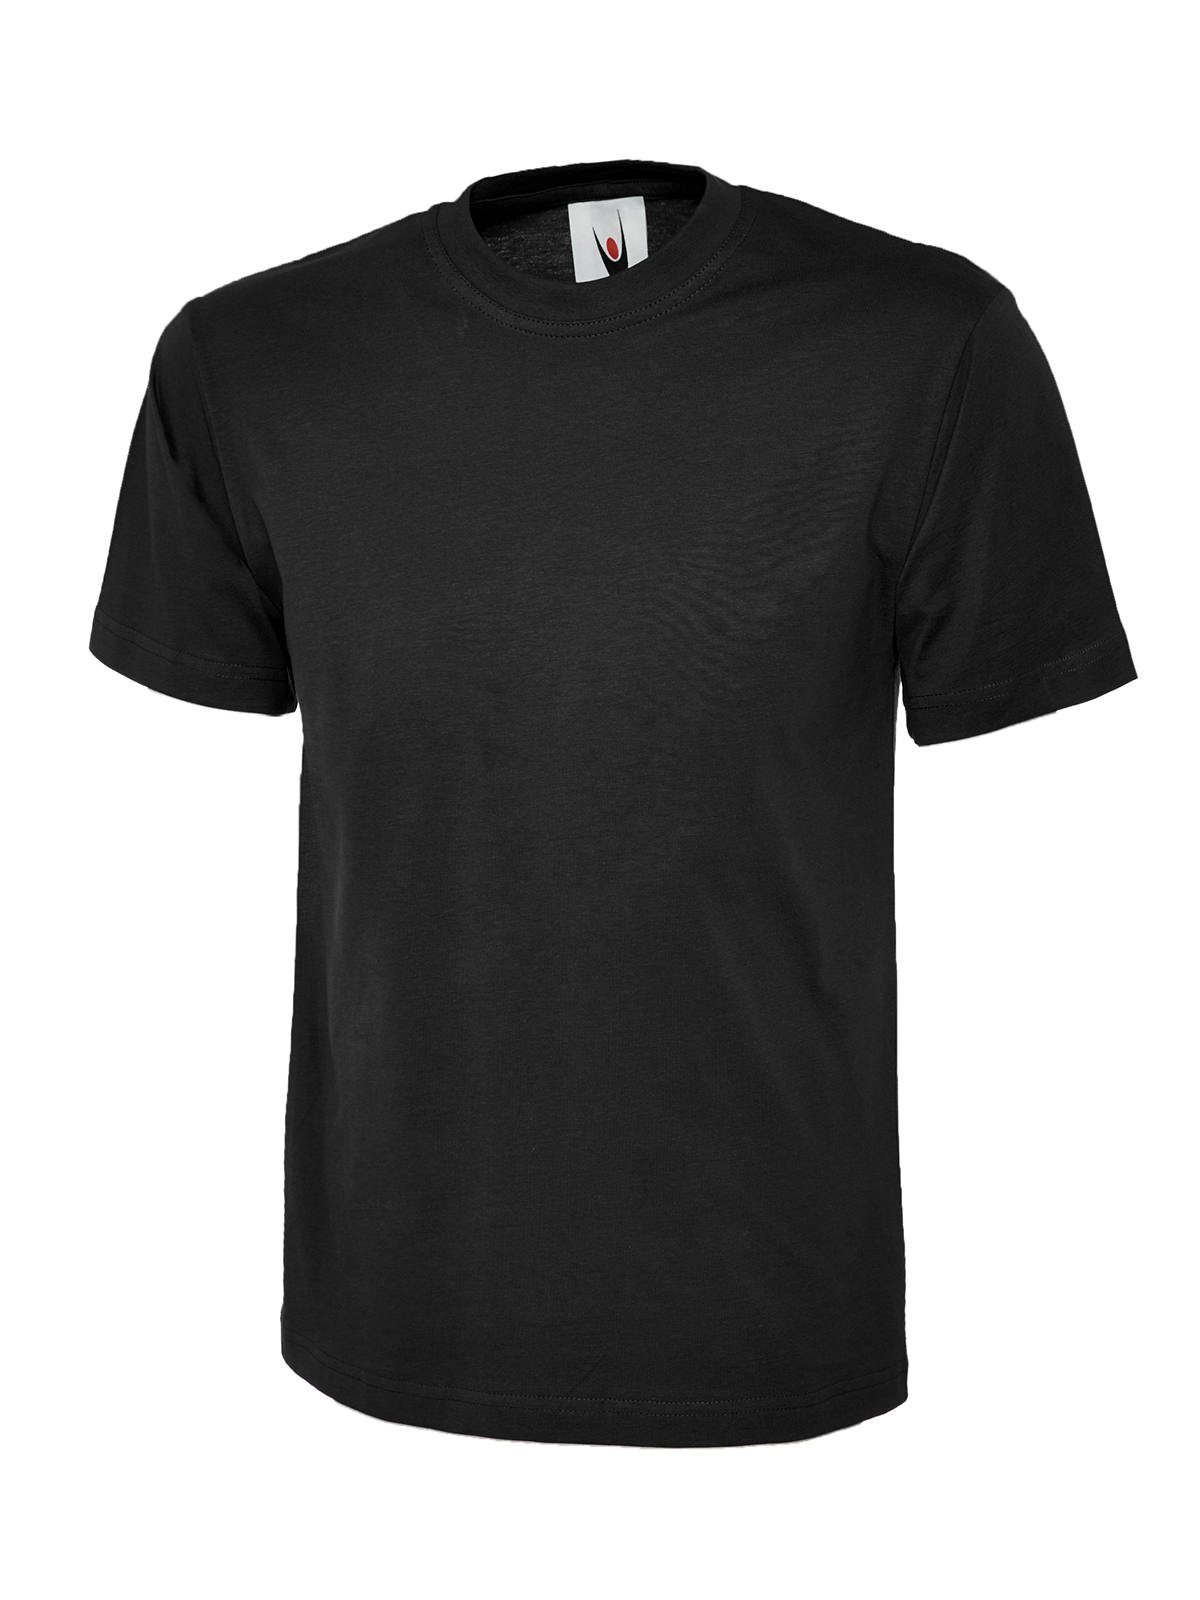 Uc301 180gsm classic t-shirt - black - 2xl